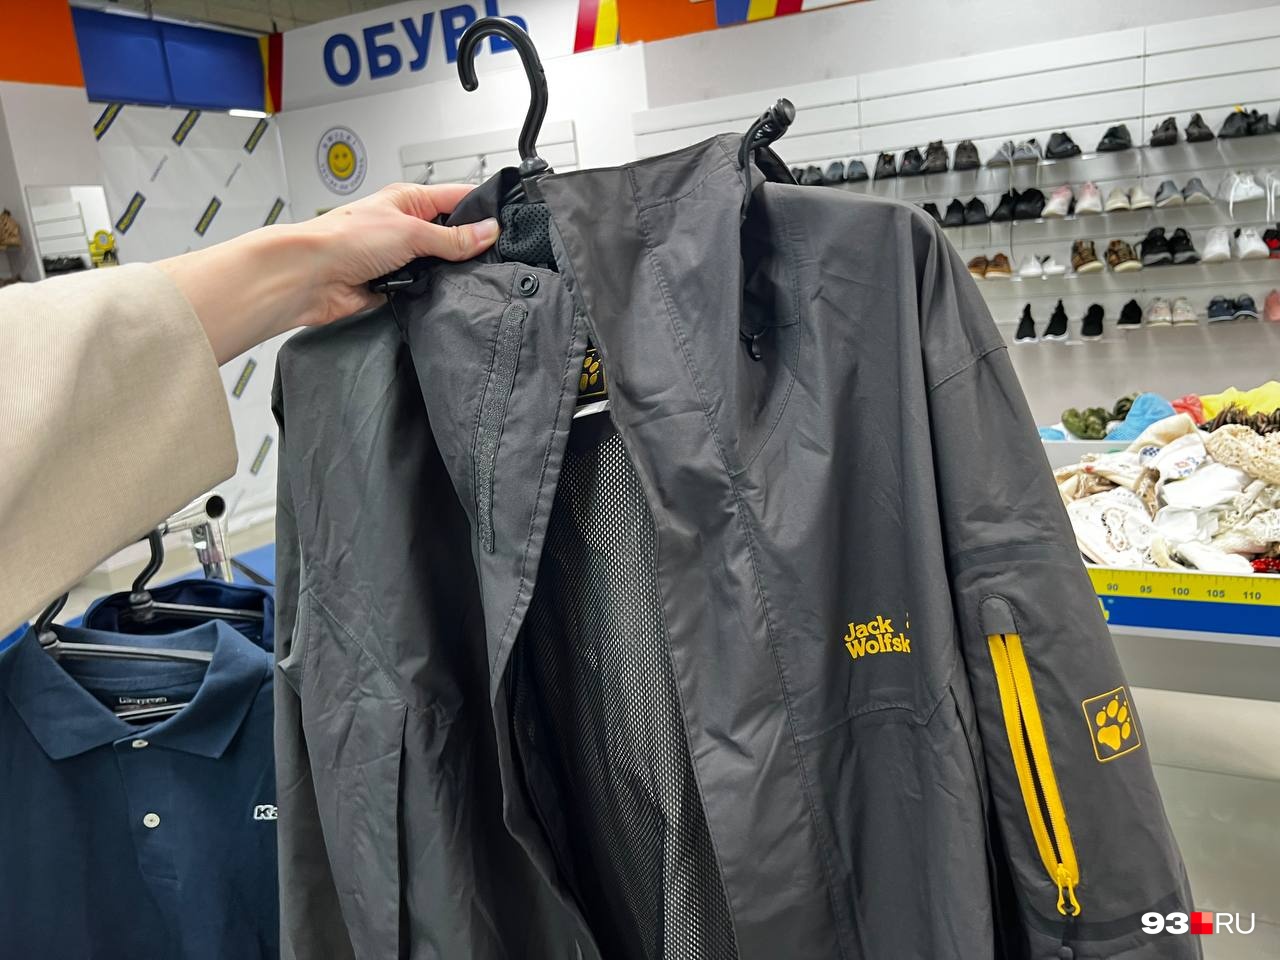 Куртка качественного немецкого спортивного бренда Jack Wolfskin стоит 3500 рублей, в оригинальном магазине такая обошлась бы тысяч в 15